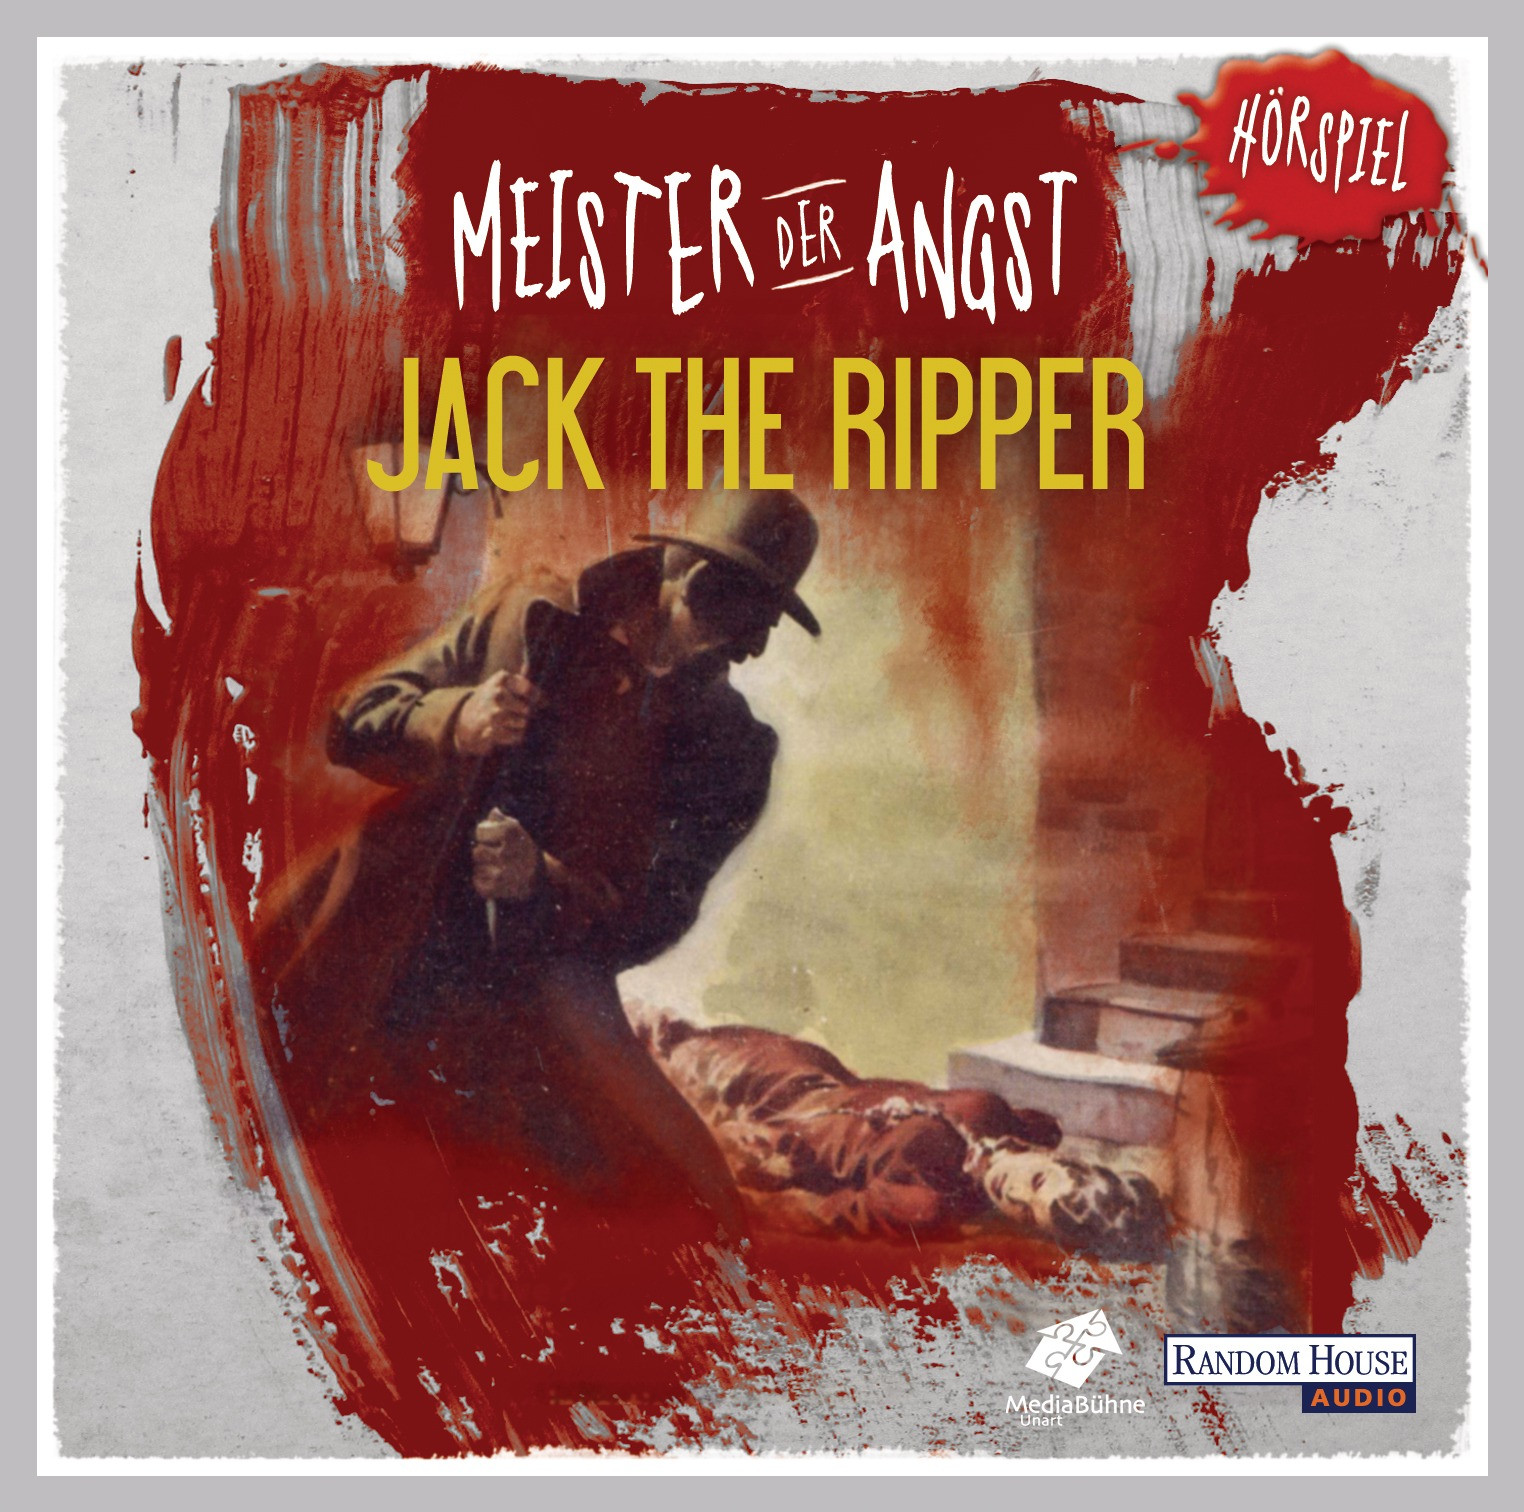 Meister der Angst - Jack the Ripper